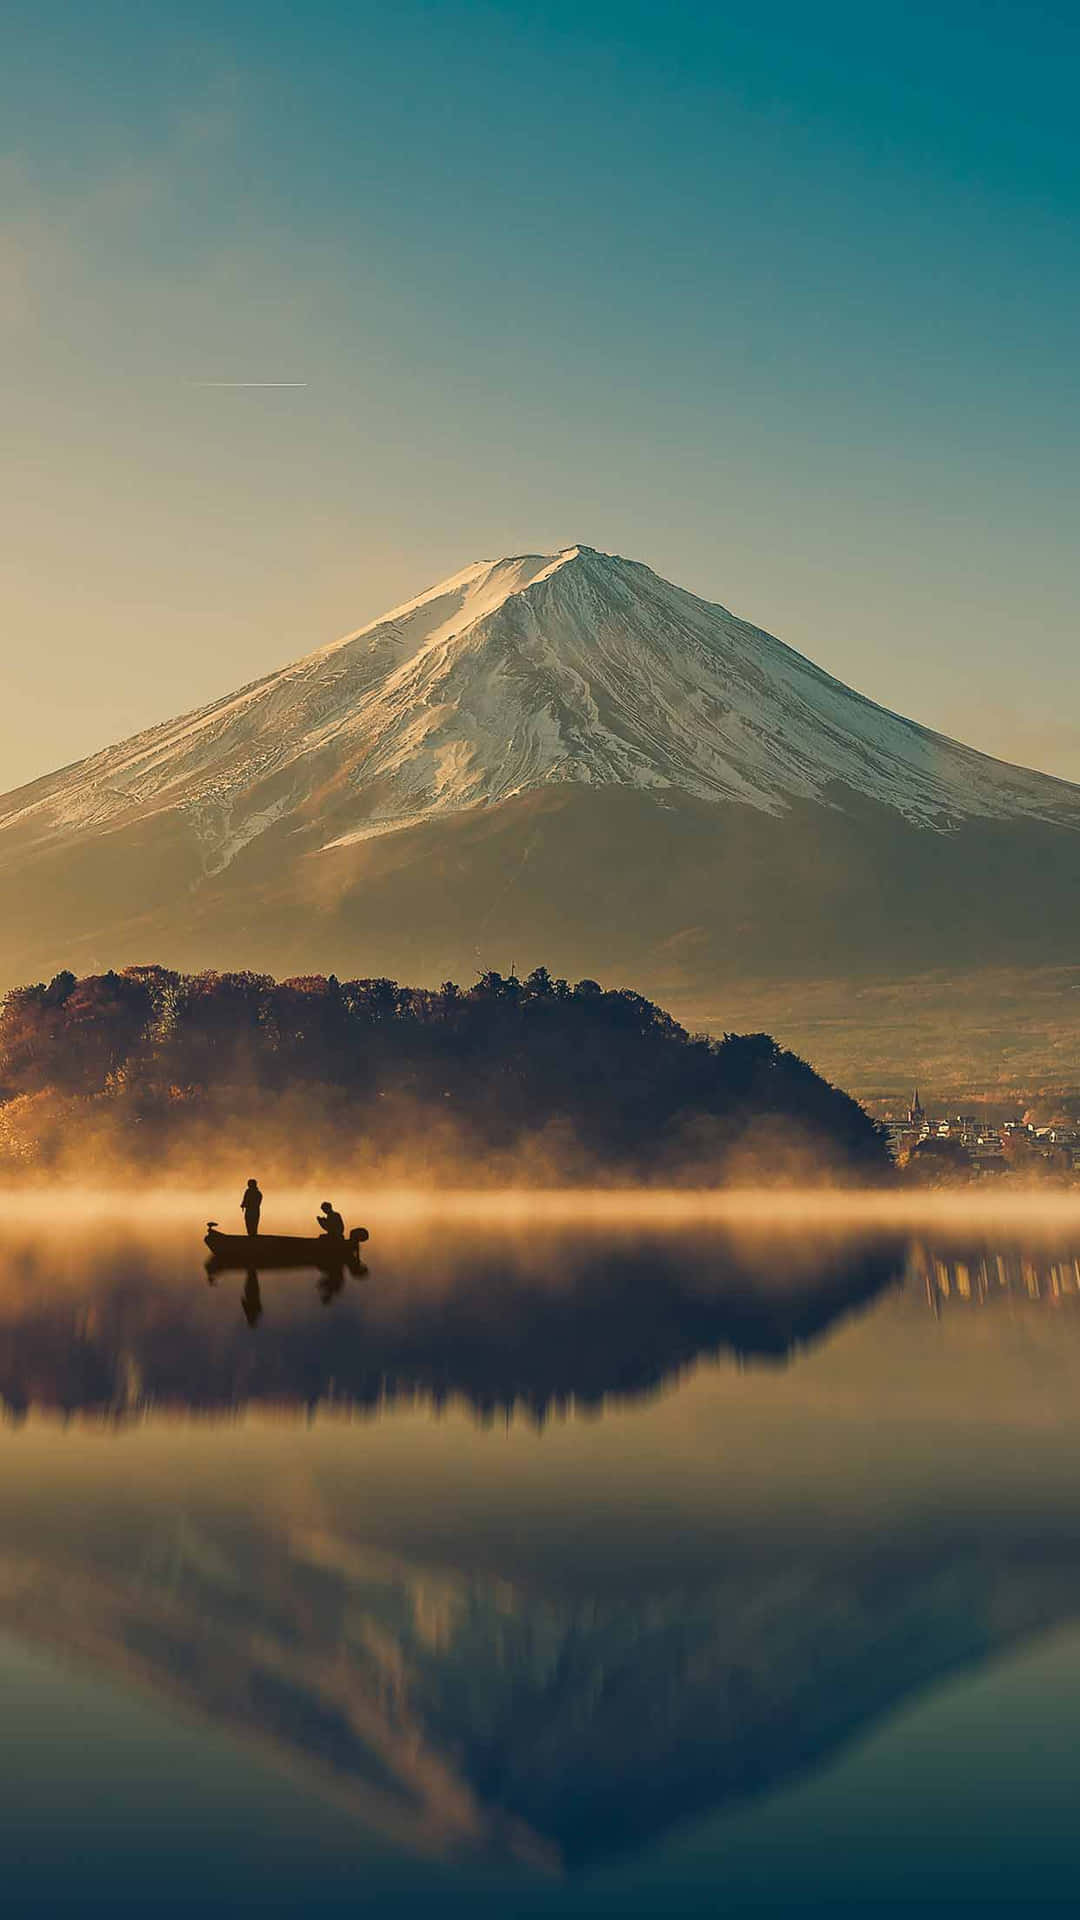 Fuji-san In Japan With Lake View Wallpaper